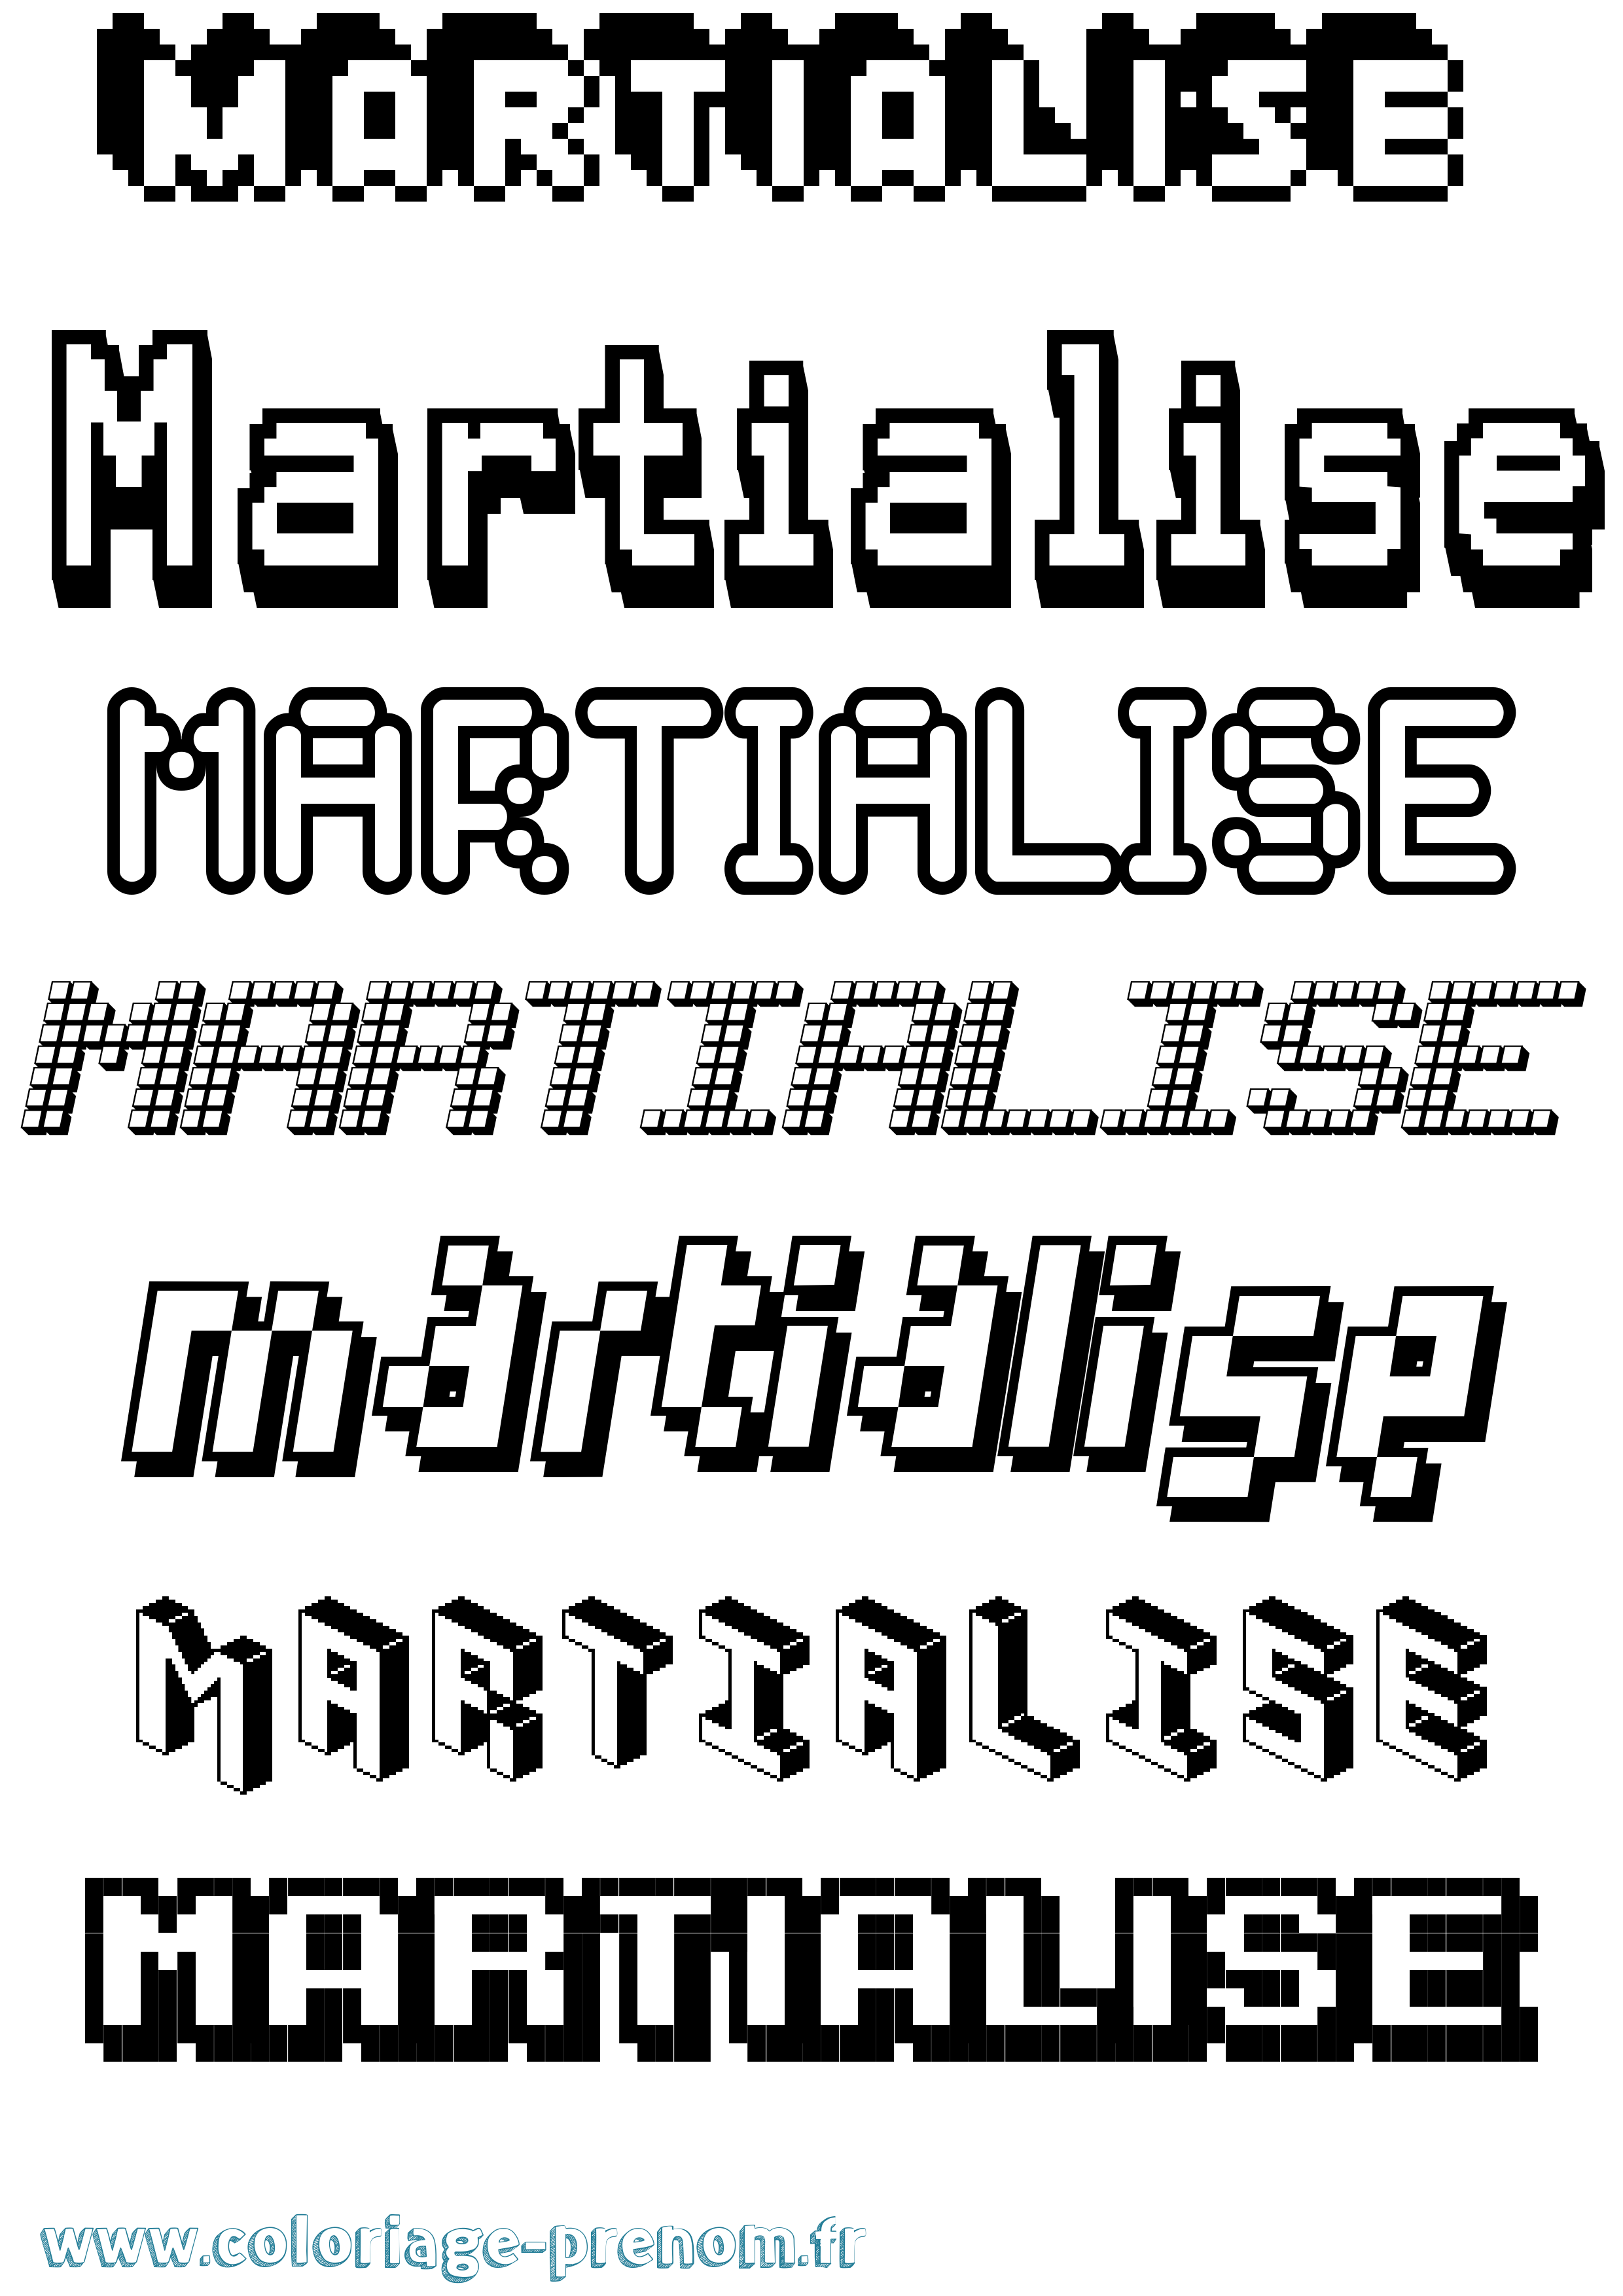 Coloriage prénom Martialise Pixel